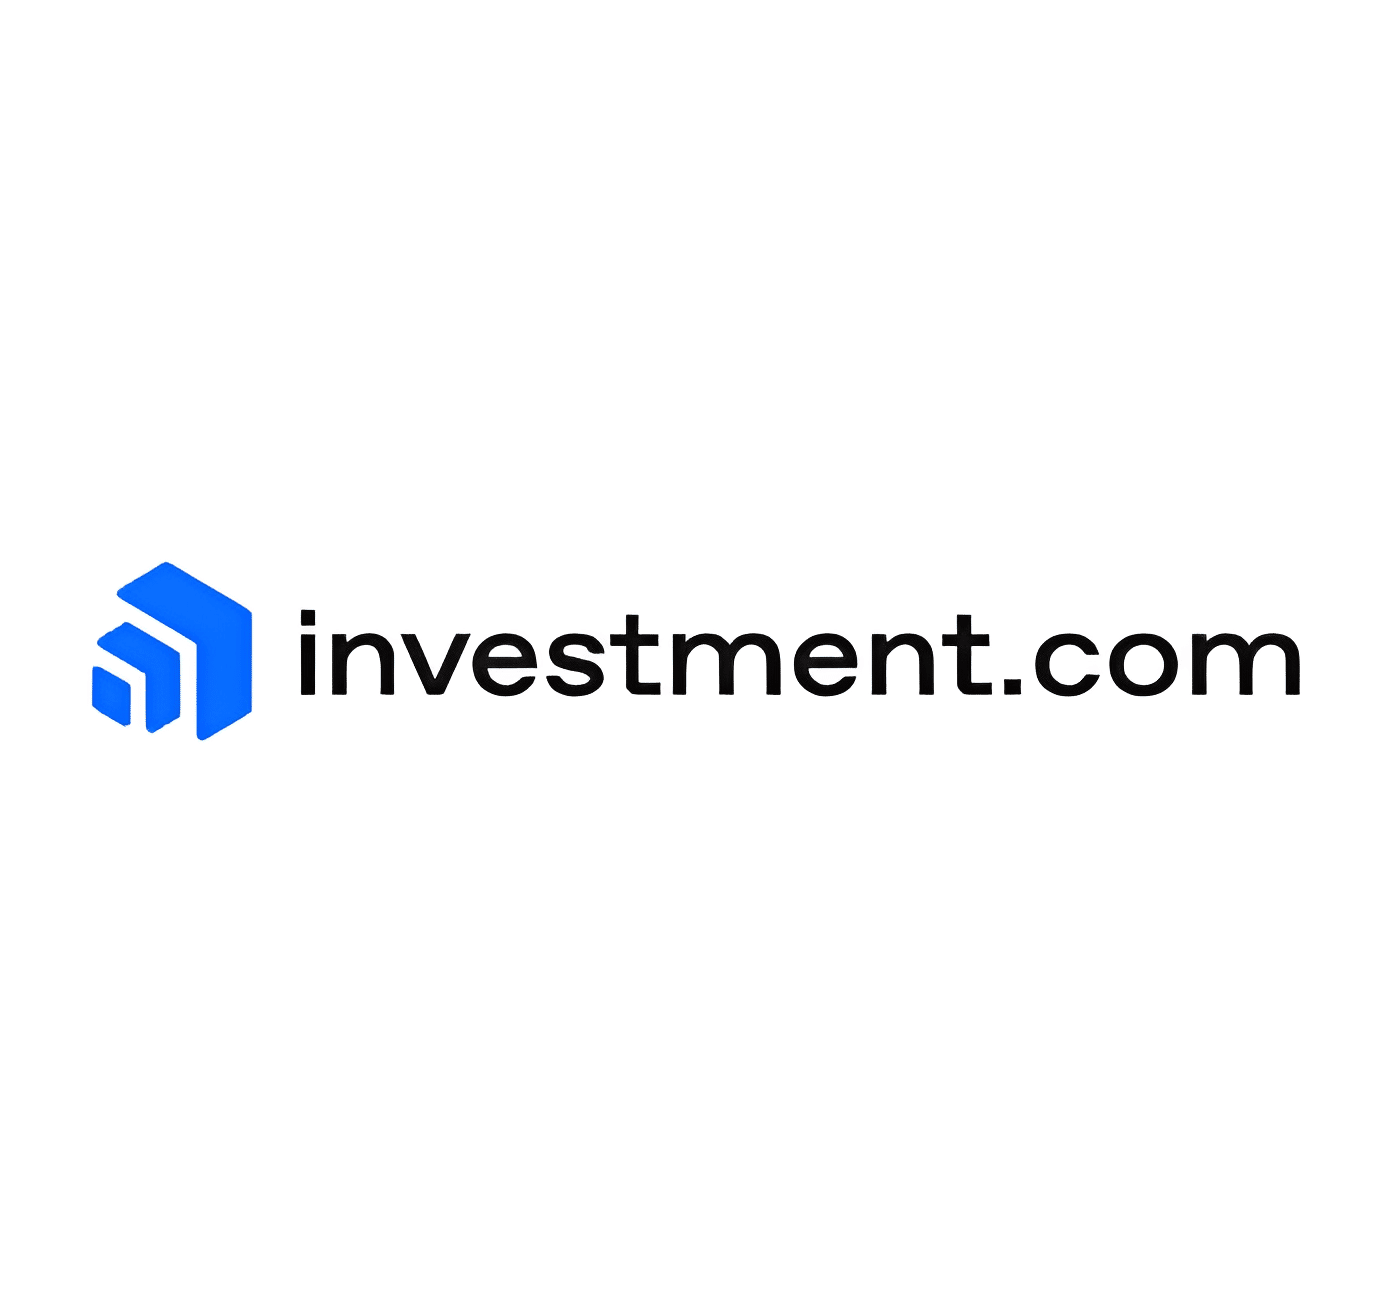 investment.com